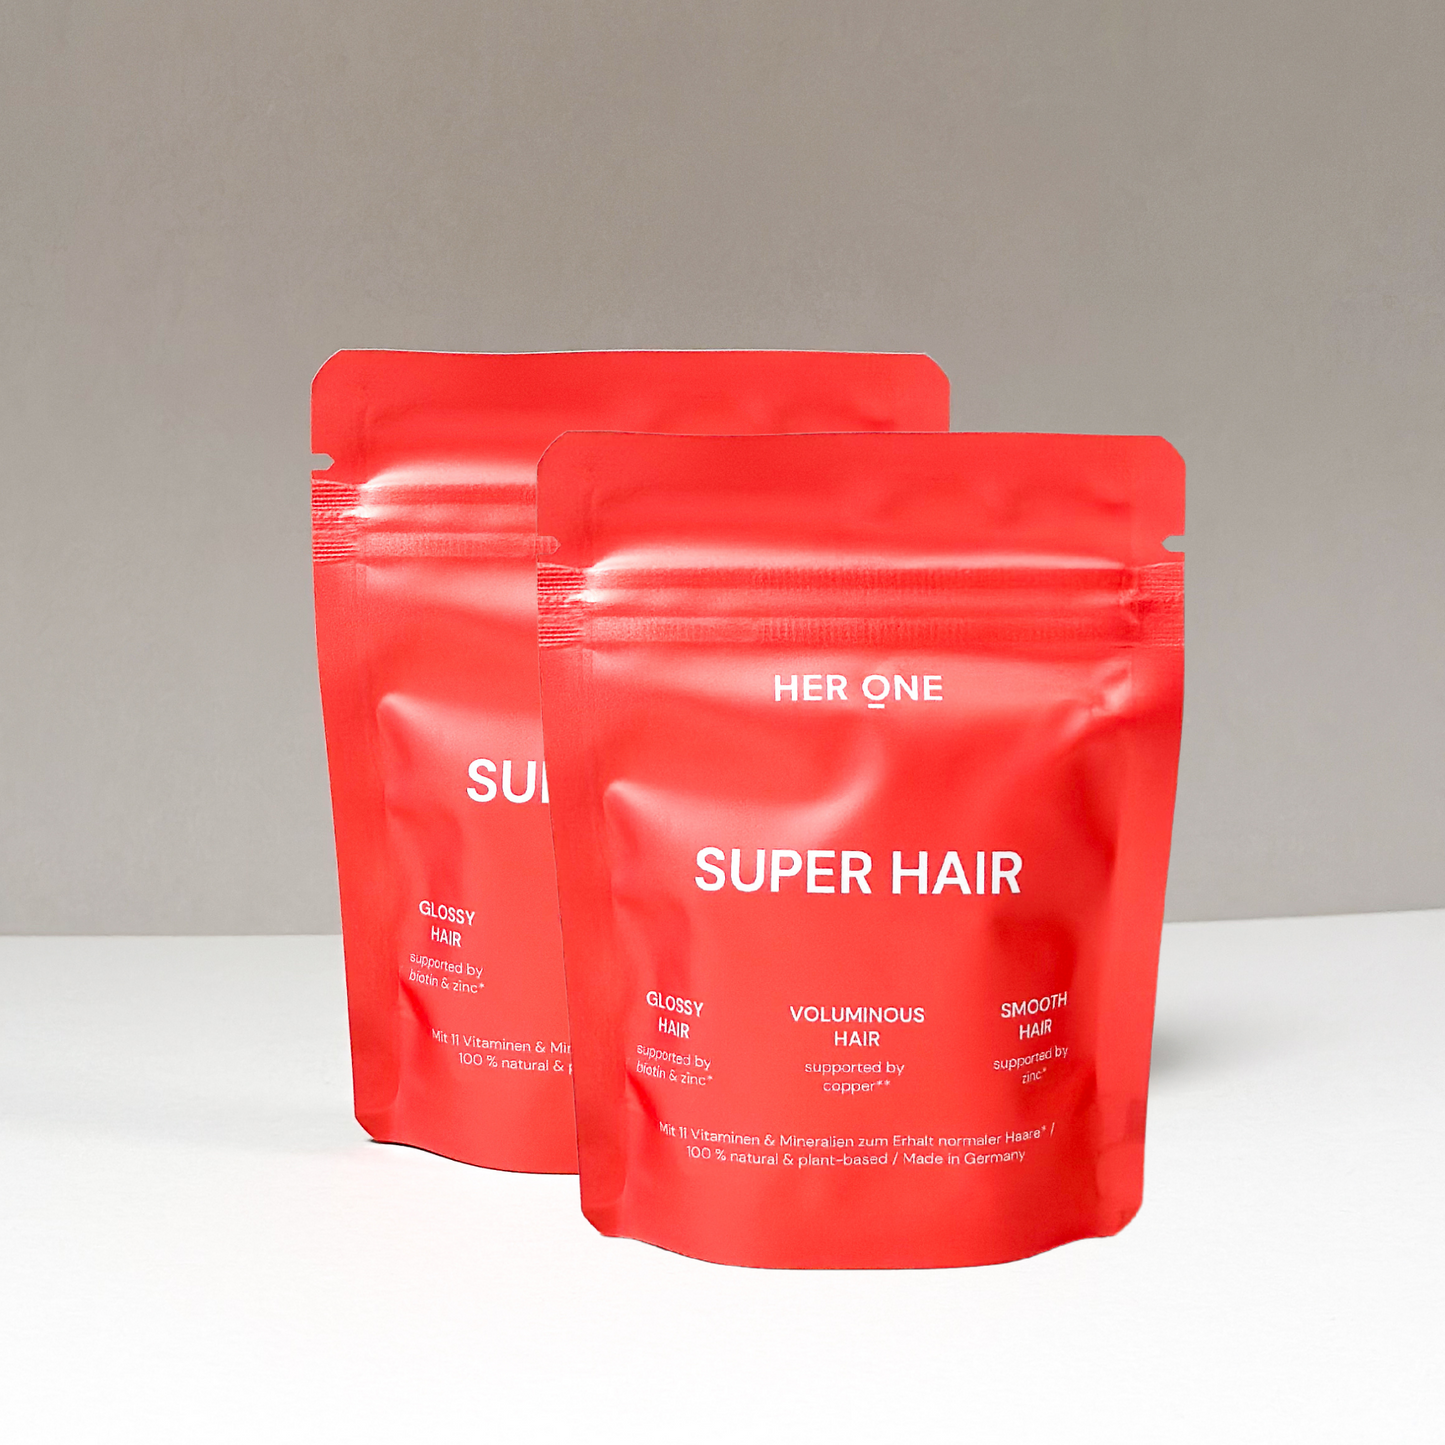 SUPER HAIR (mit Rosmarin-Extrakt)